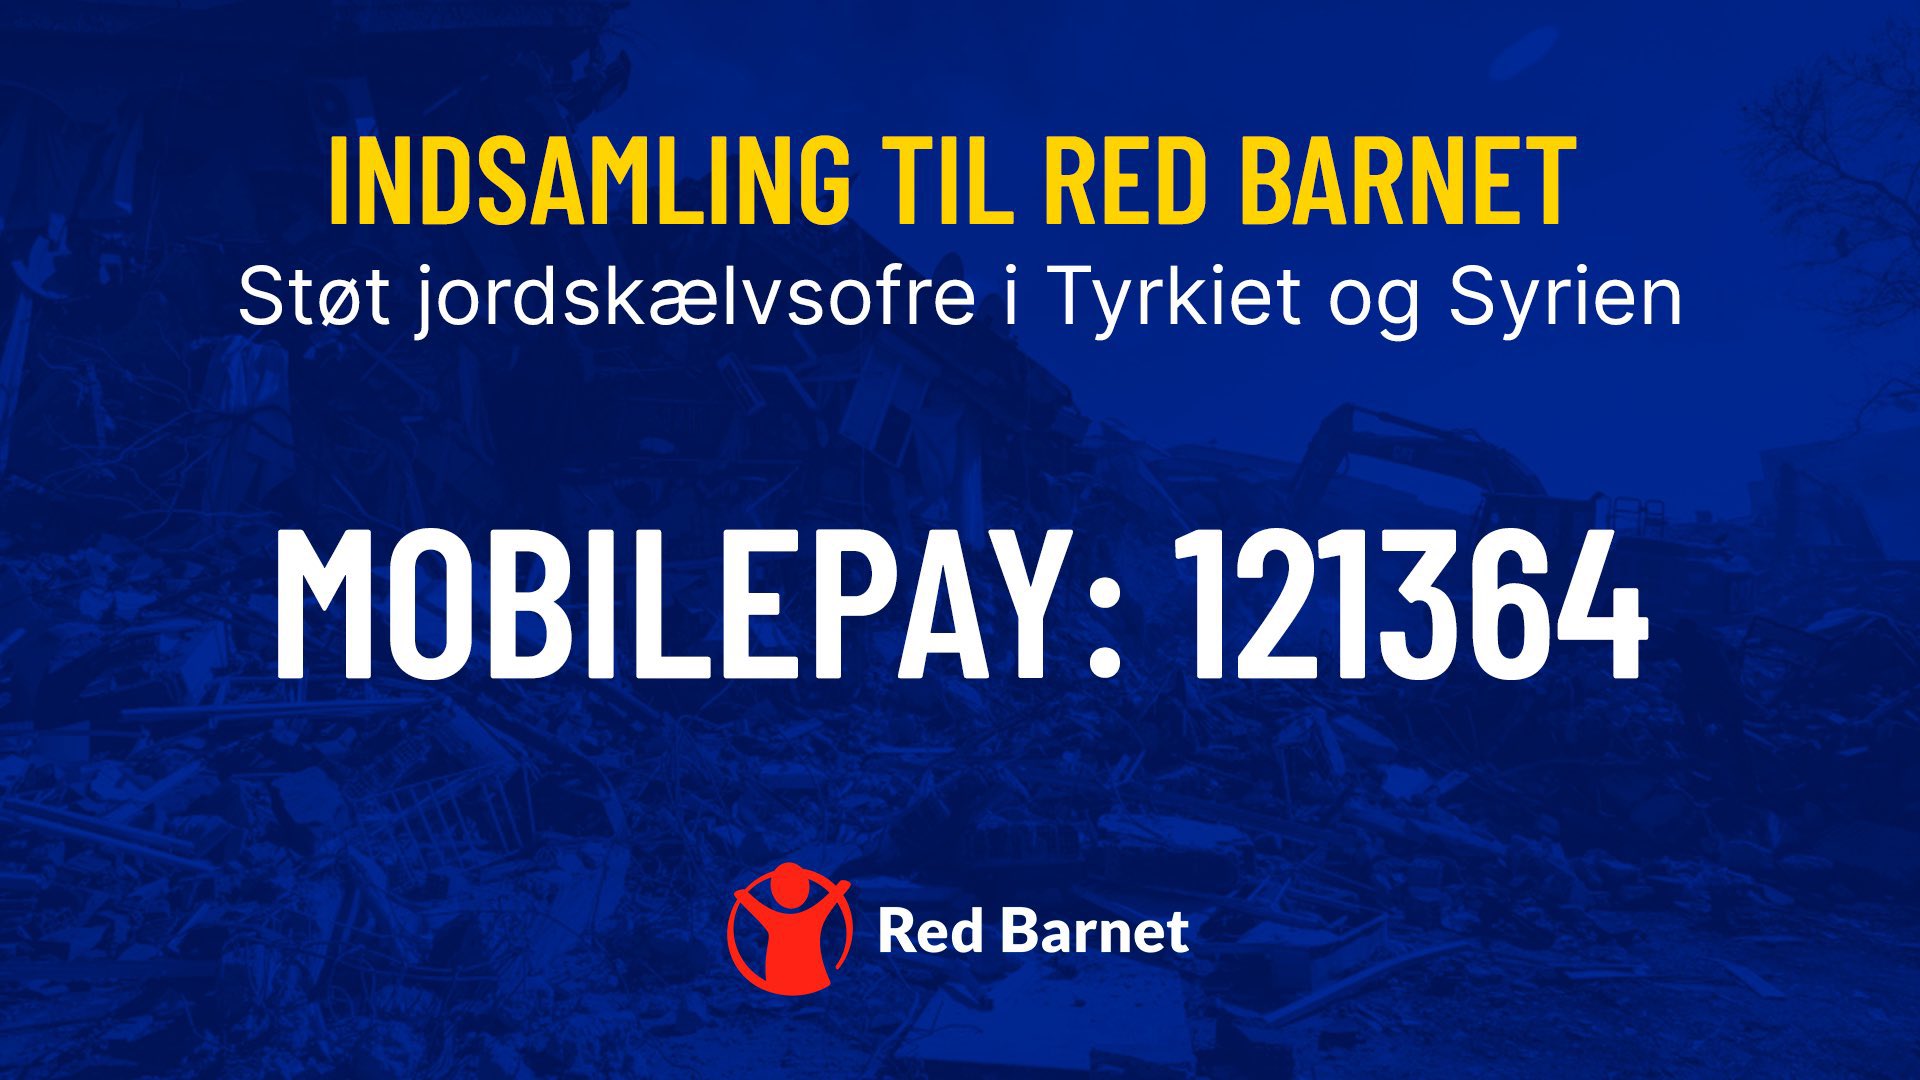 kæde Tæmme kort Brøndby IF on Twitter: "Til aftenens kamp samler Brøndby IF, @fanafdelingen  og @redbarnetdk ind til jordskælvsofrene i Tyrkiet og Syrien❤️ Ønsker du at  støtte Red Barnets arbejde i områderne, kan du donere